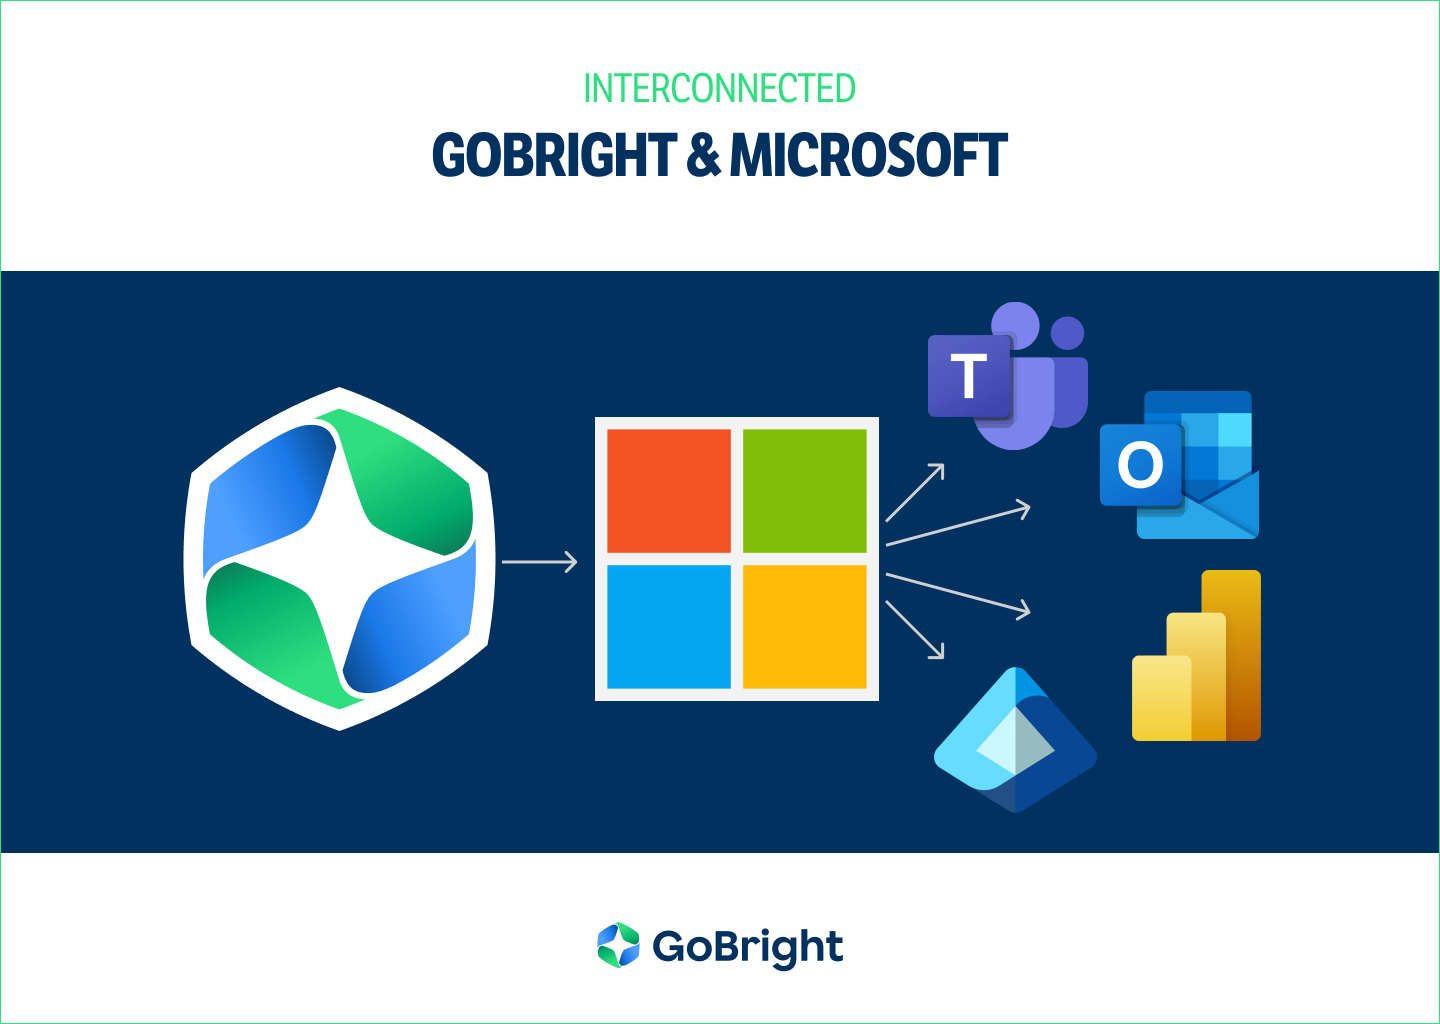 GoBright Microsoft è interconnessa